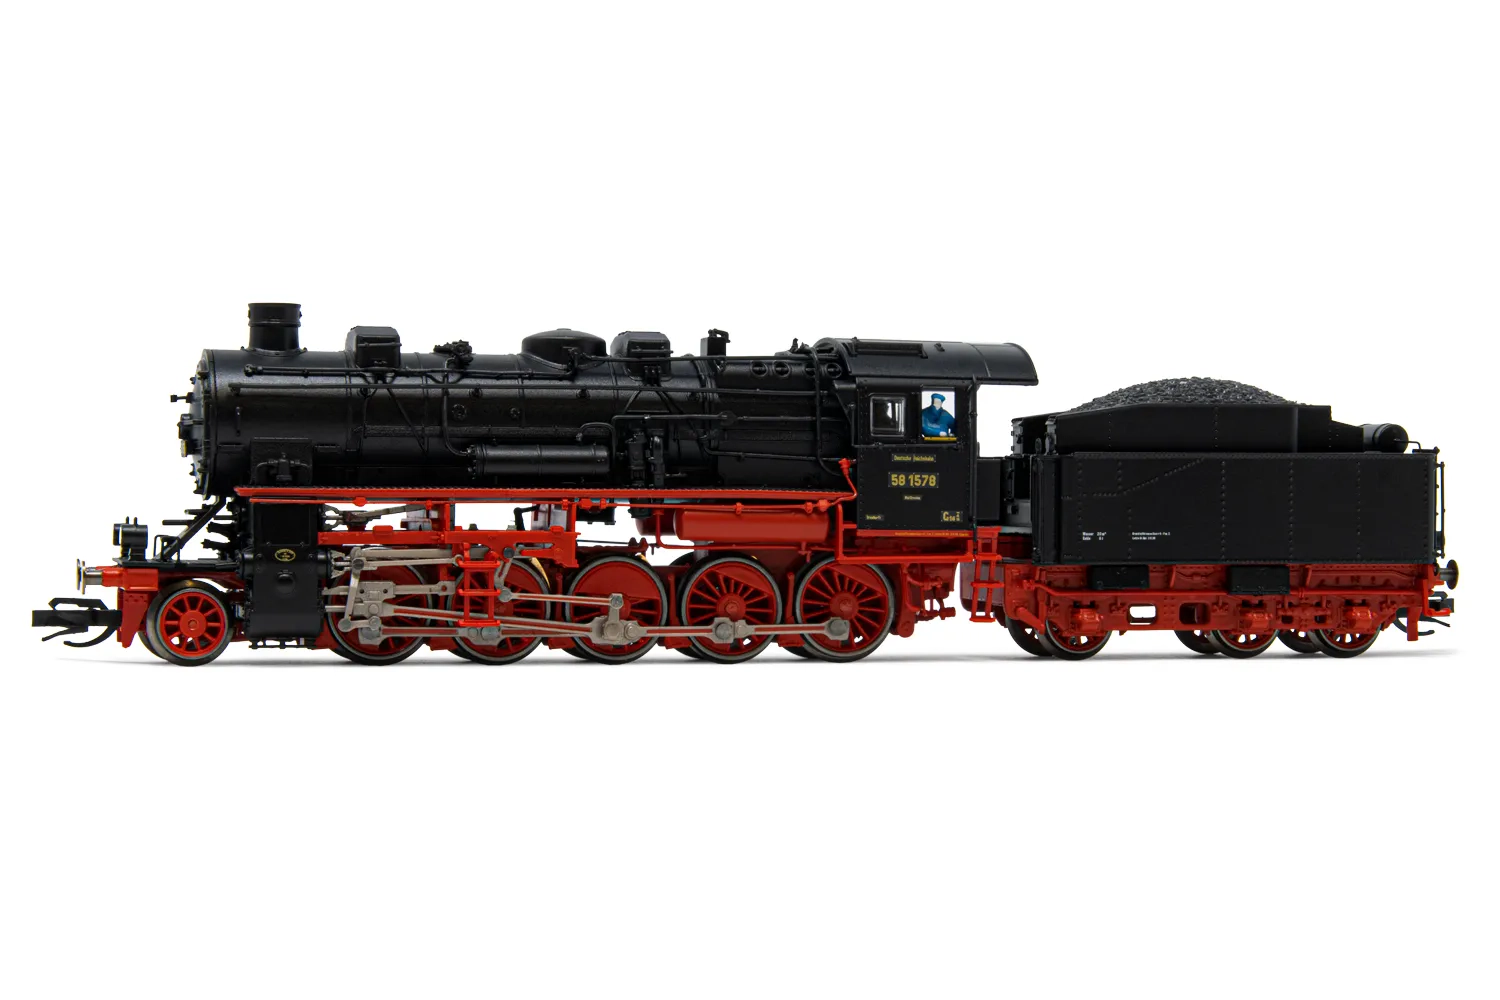 DRG, Dampflokomotive BR 58 1578, in schwarz/roter Lackierung, Ep. II